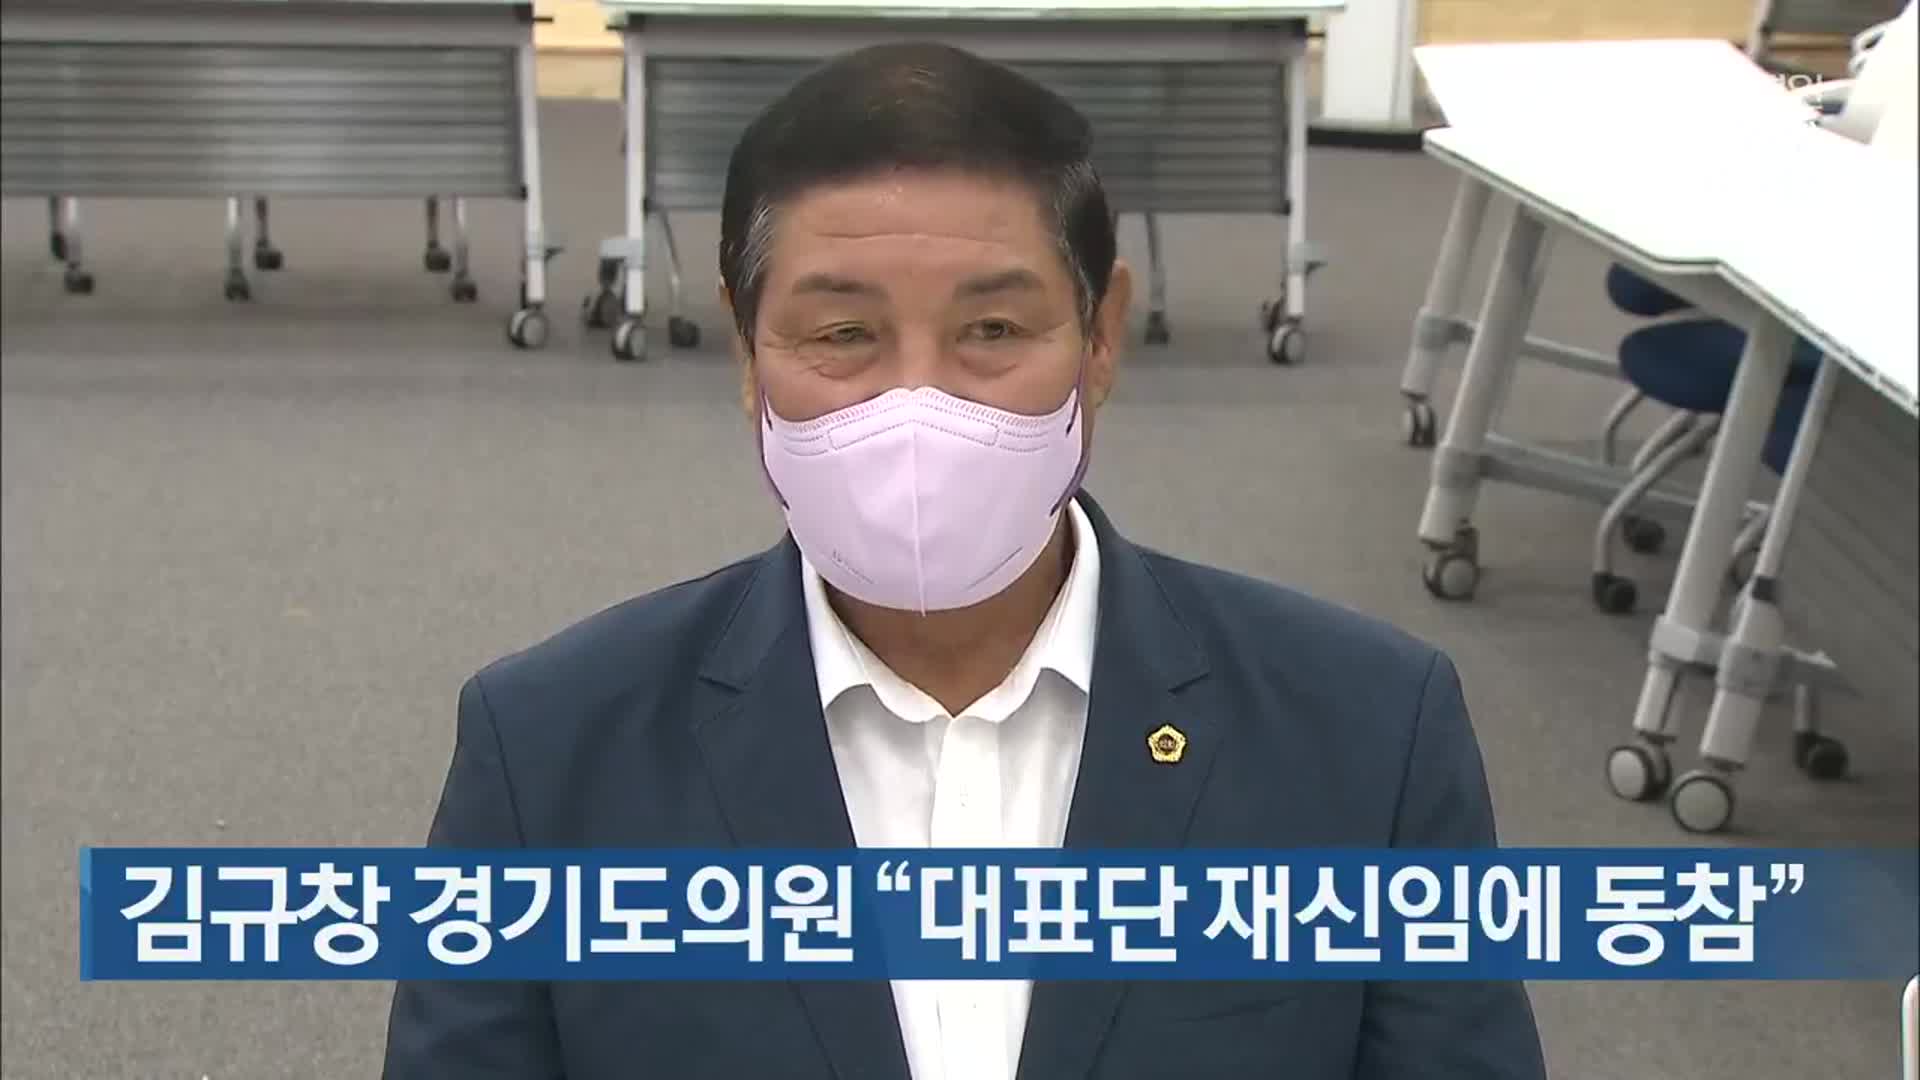 김규창 경기도의원 “대표단 재신임에 동참”